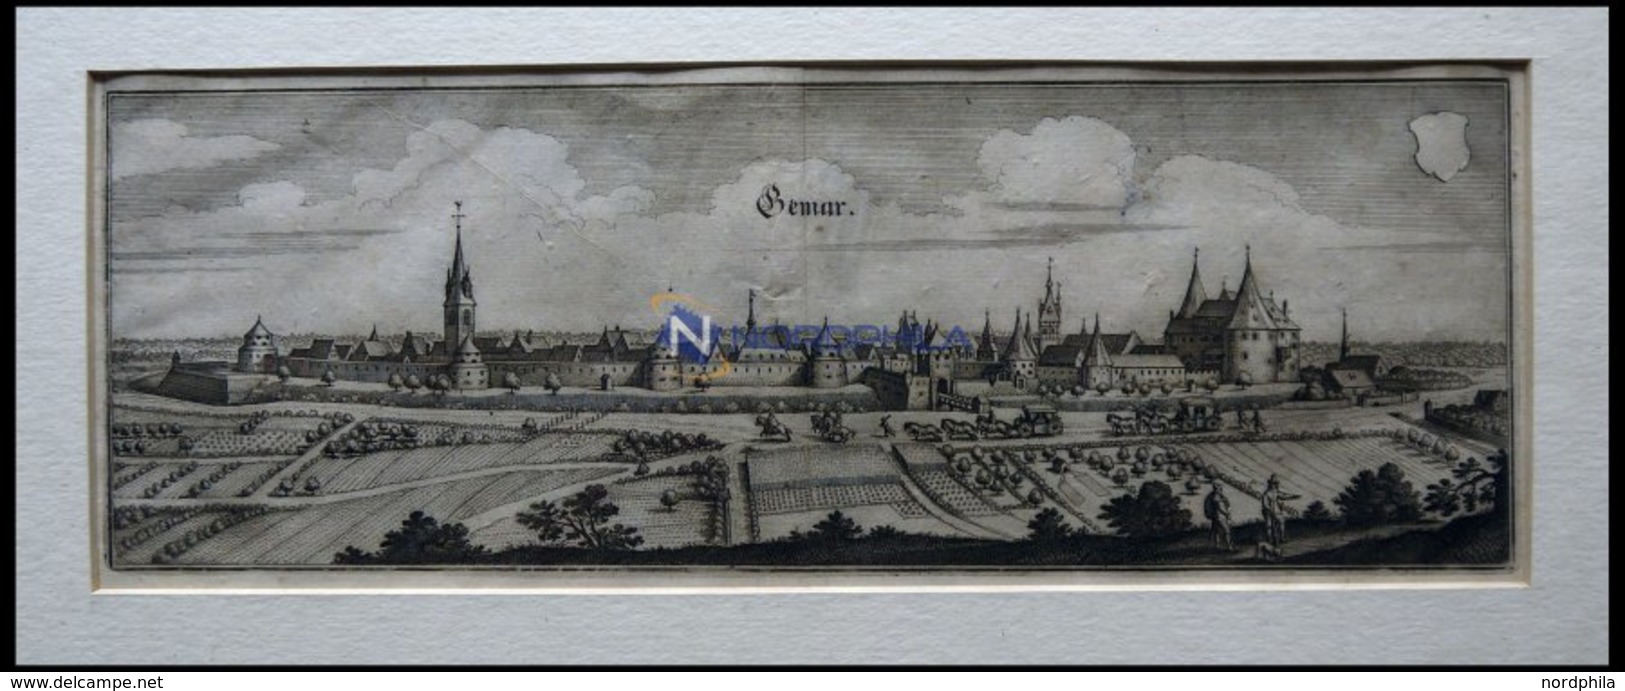 GEMAR, Gesamtansicht, Kupferstich Von Merian Um 1645 - Litografia